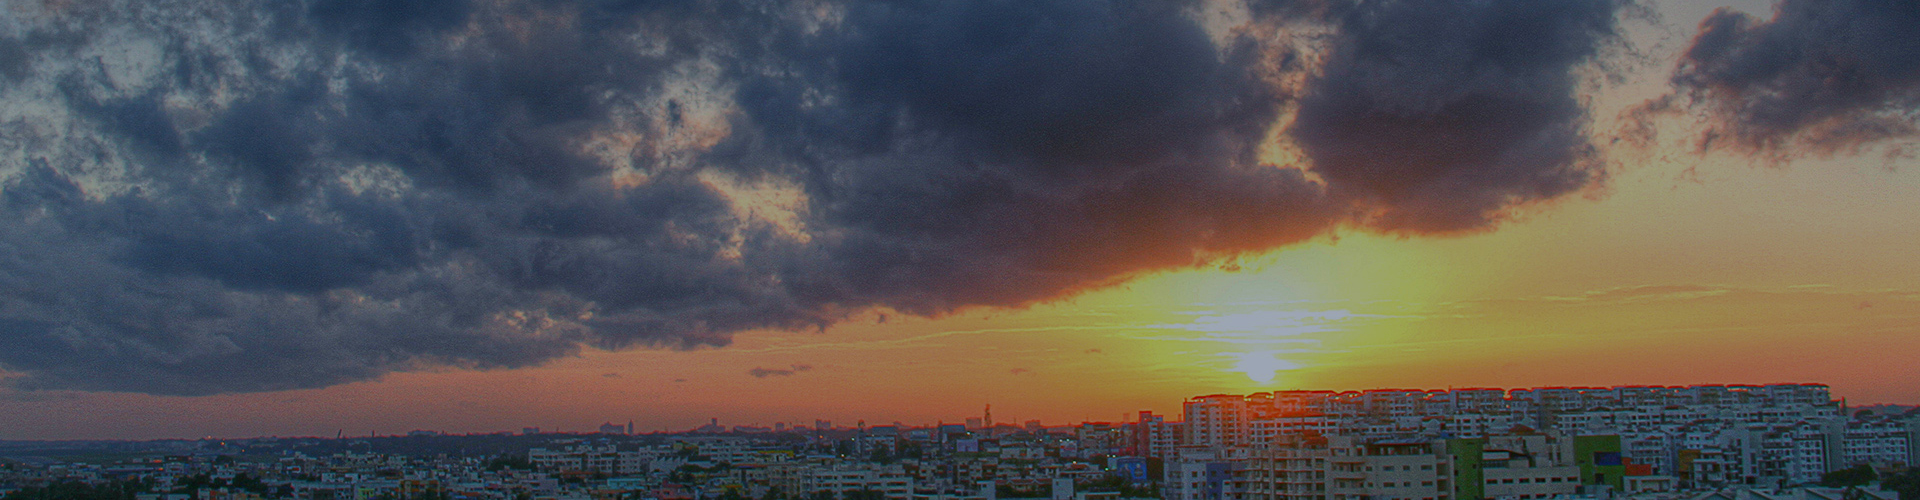 Sunset-Over-bangalore-india